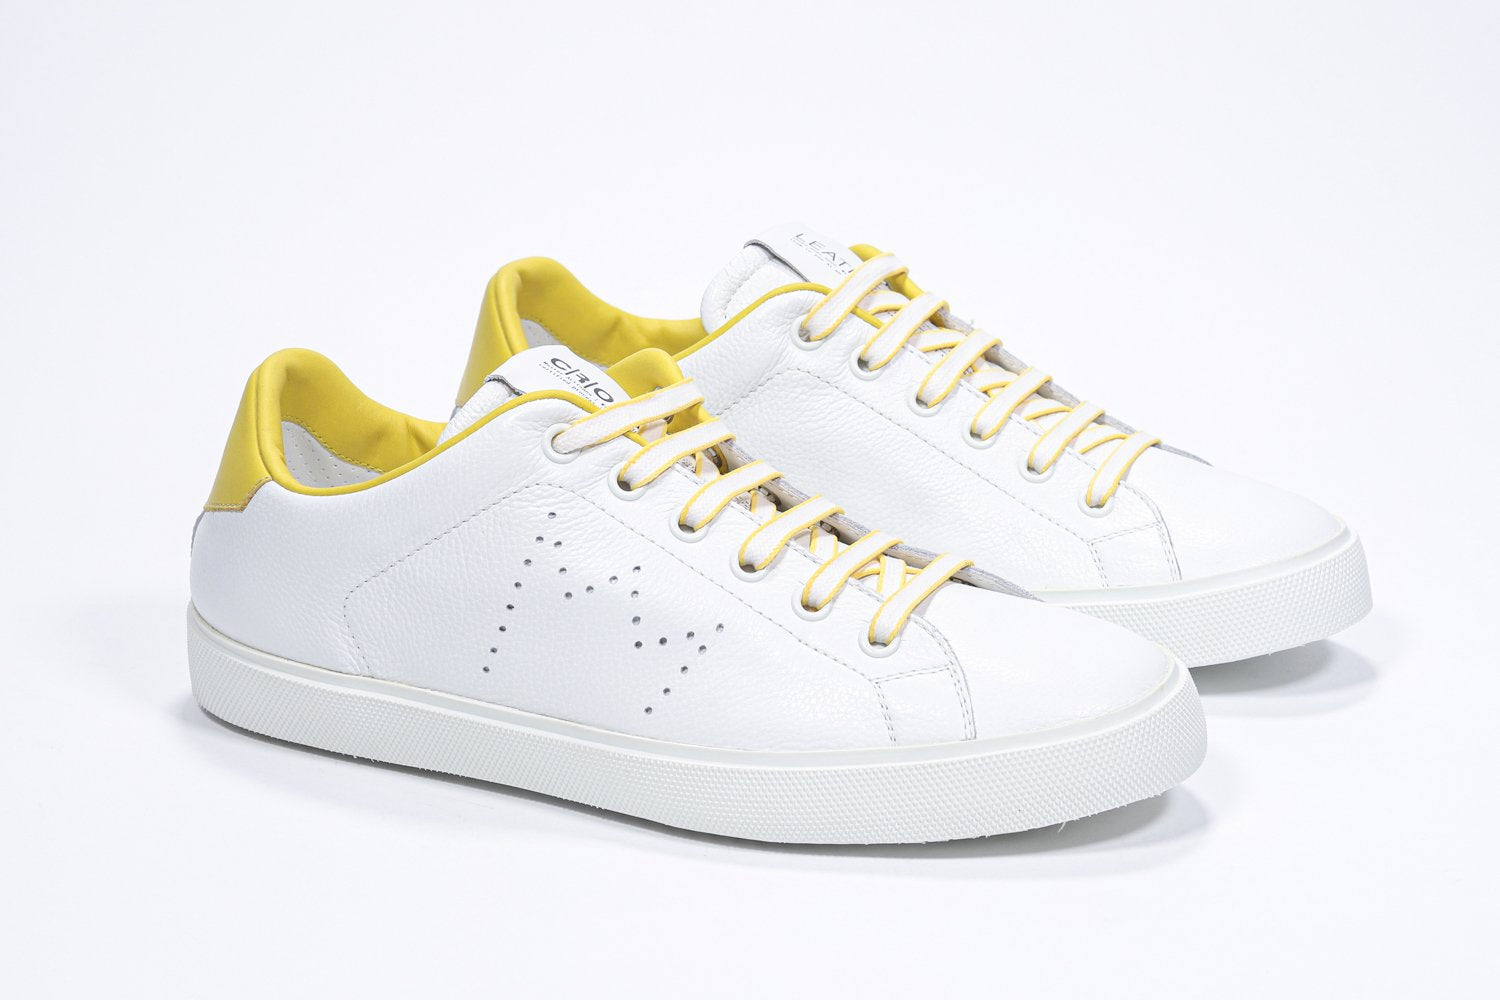 Vue de trois quarts de l'avant de la chaussure blanche sneaker avec des détails jaunes et le logo perforé de la couronne sur la tige. Tige en cuir et semelle en caoutchouc blanc.